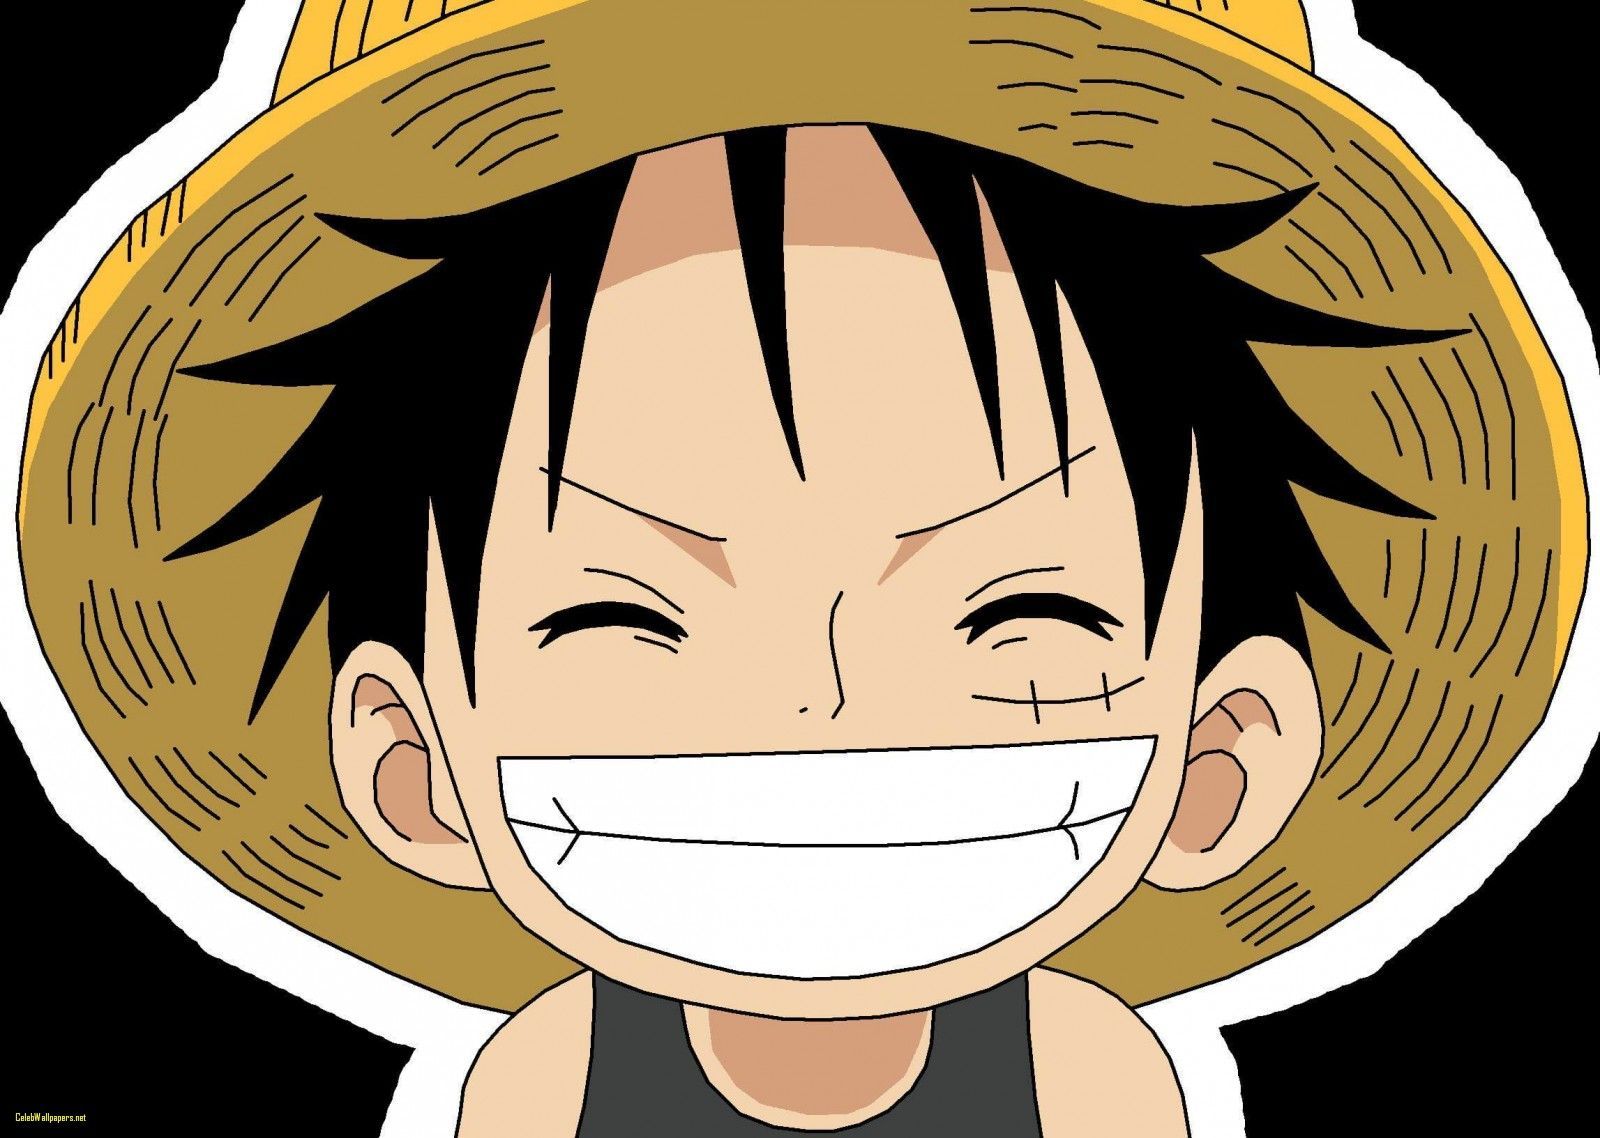 Hình ảnh] Luffy One Piece trọn bộ đẹp ngầu siêu cute full HD - 1920x1080 |  Anime, One piece wallpaper iphone, One piece anime